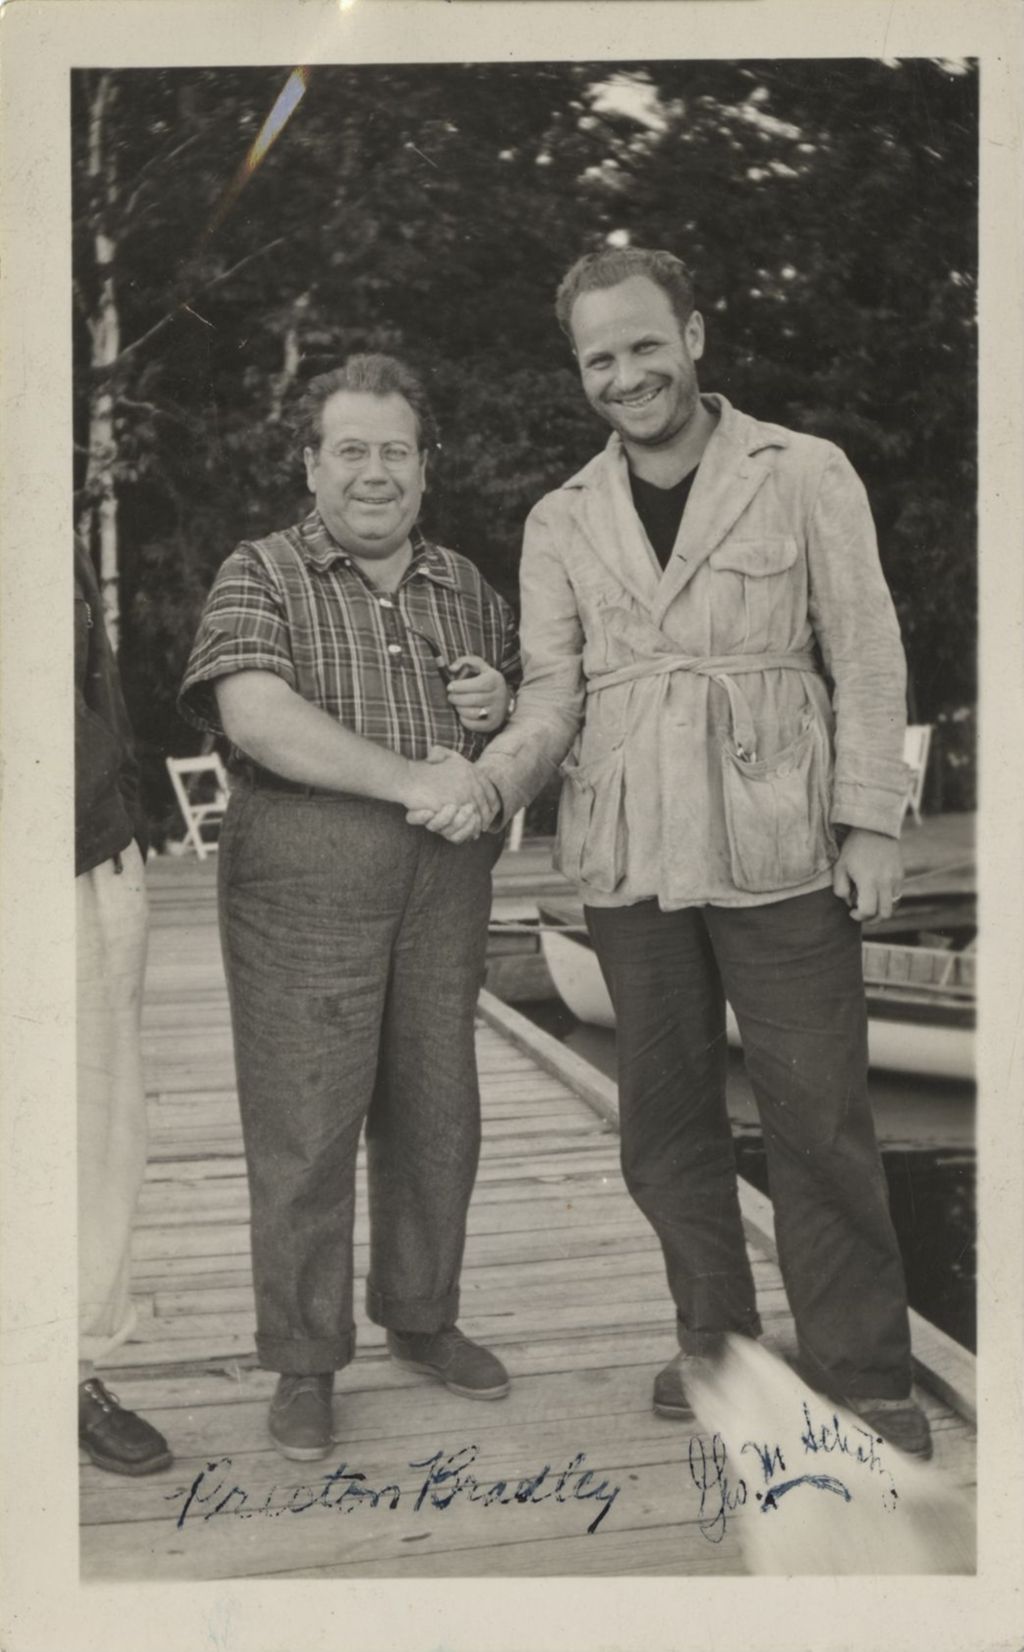 Preston Bradley and George M. Schatz